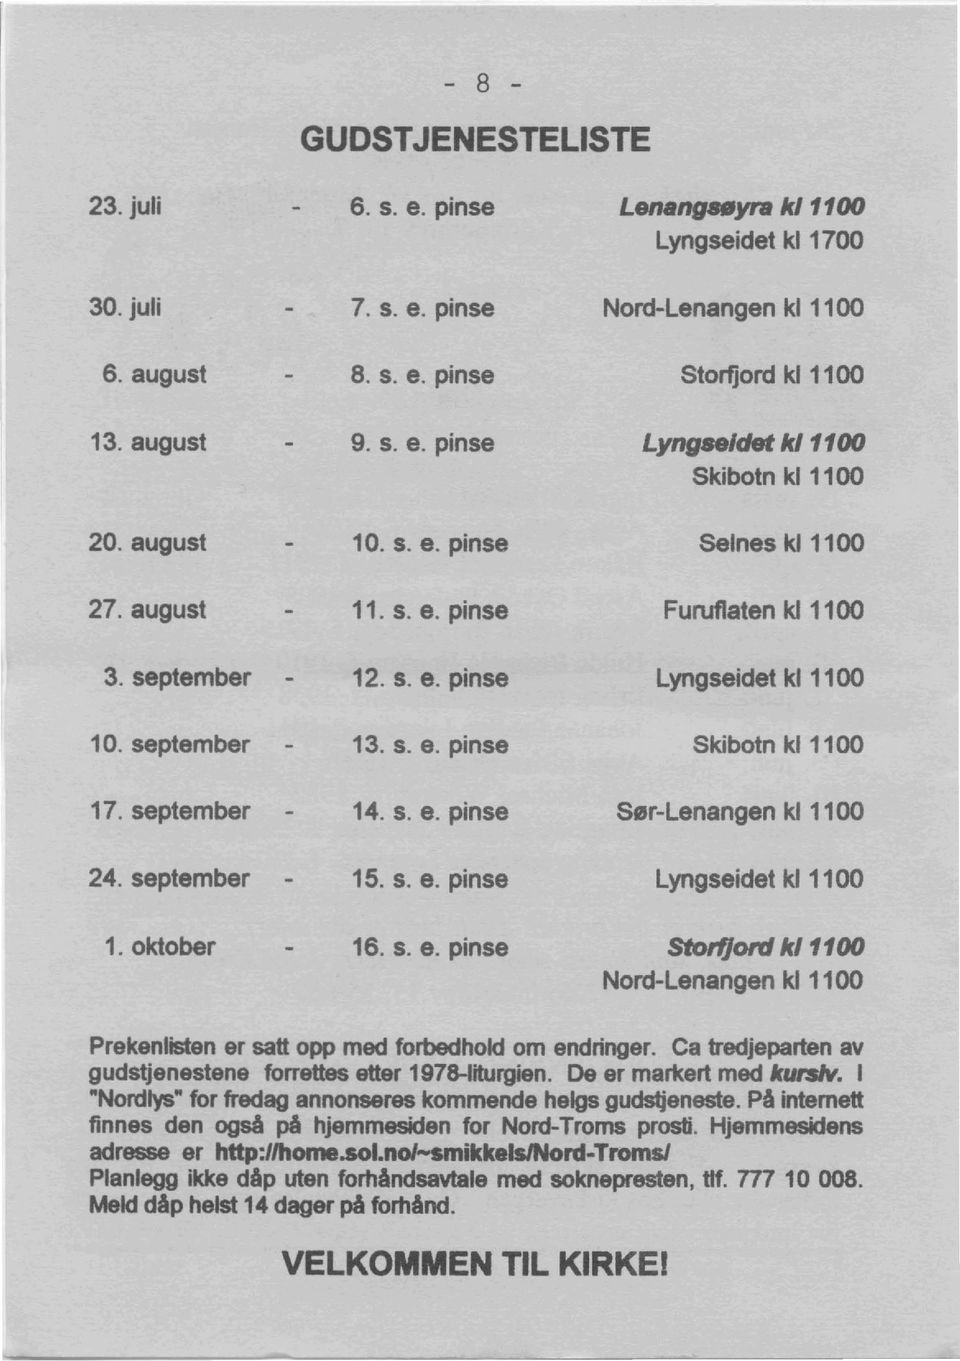 oktober 16. s. e. pinse Stotfjonl kl1100 Nord-Lenangen kl 1100 Prekenlisten er satt OPP mad forbedhold om endringer. Ca tredjeparten av gudstjenestene forrettes ettar 1978-1iturgien.